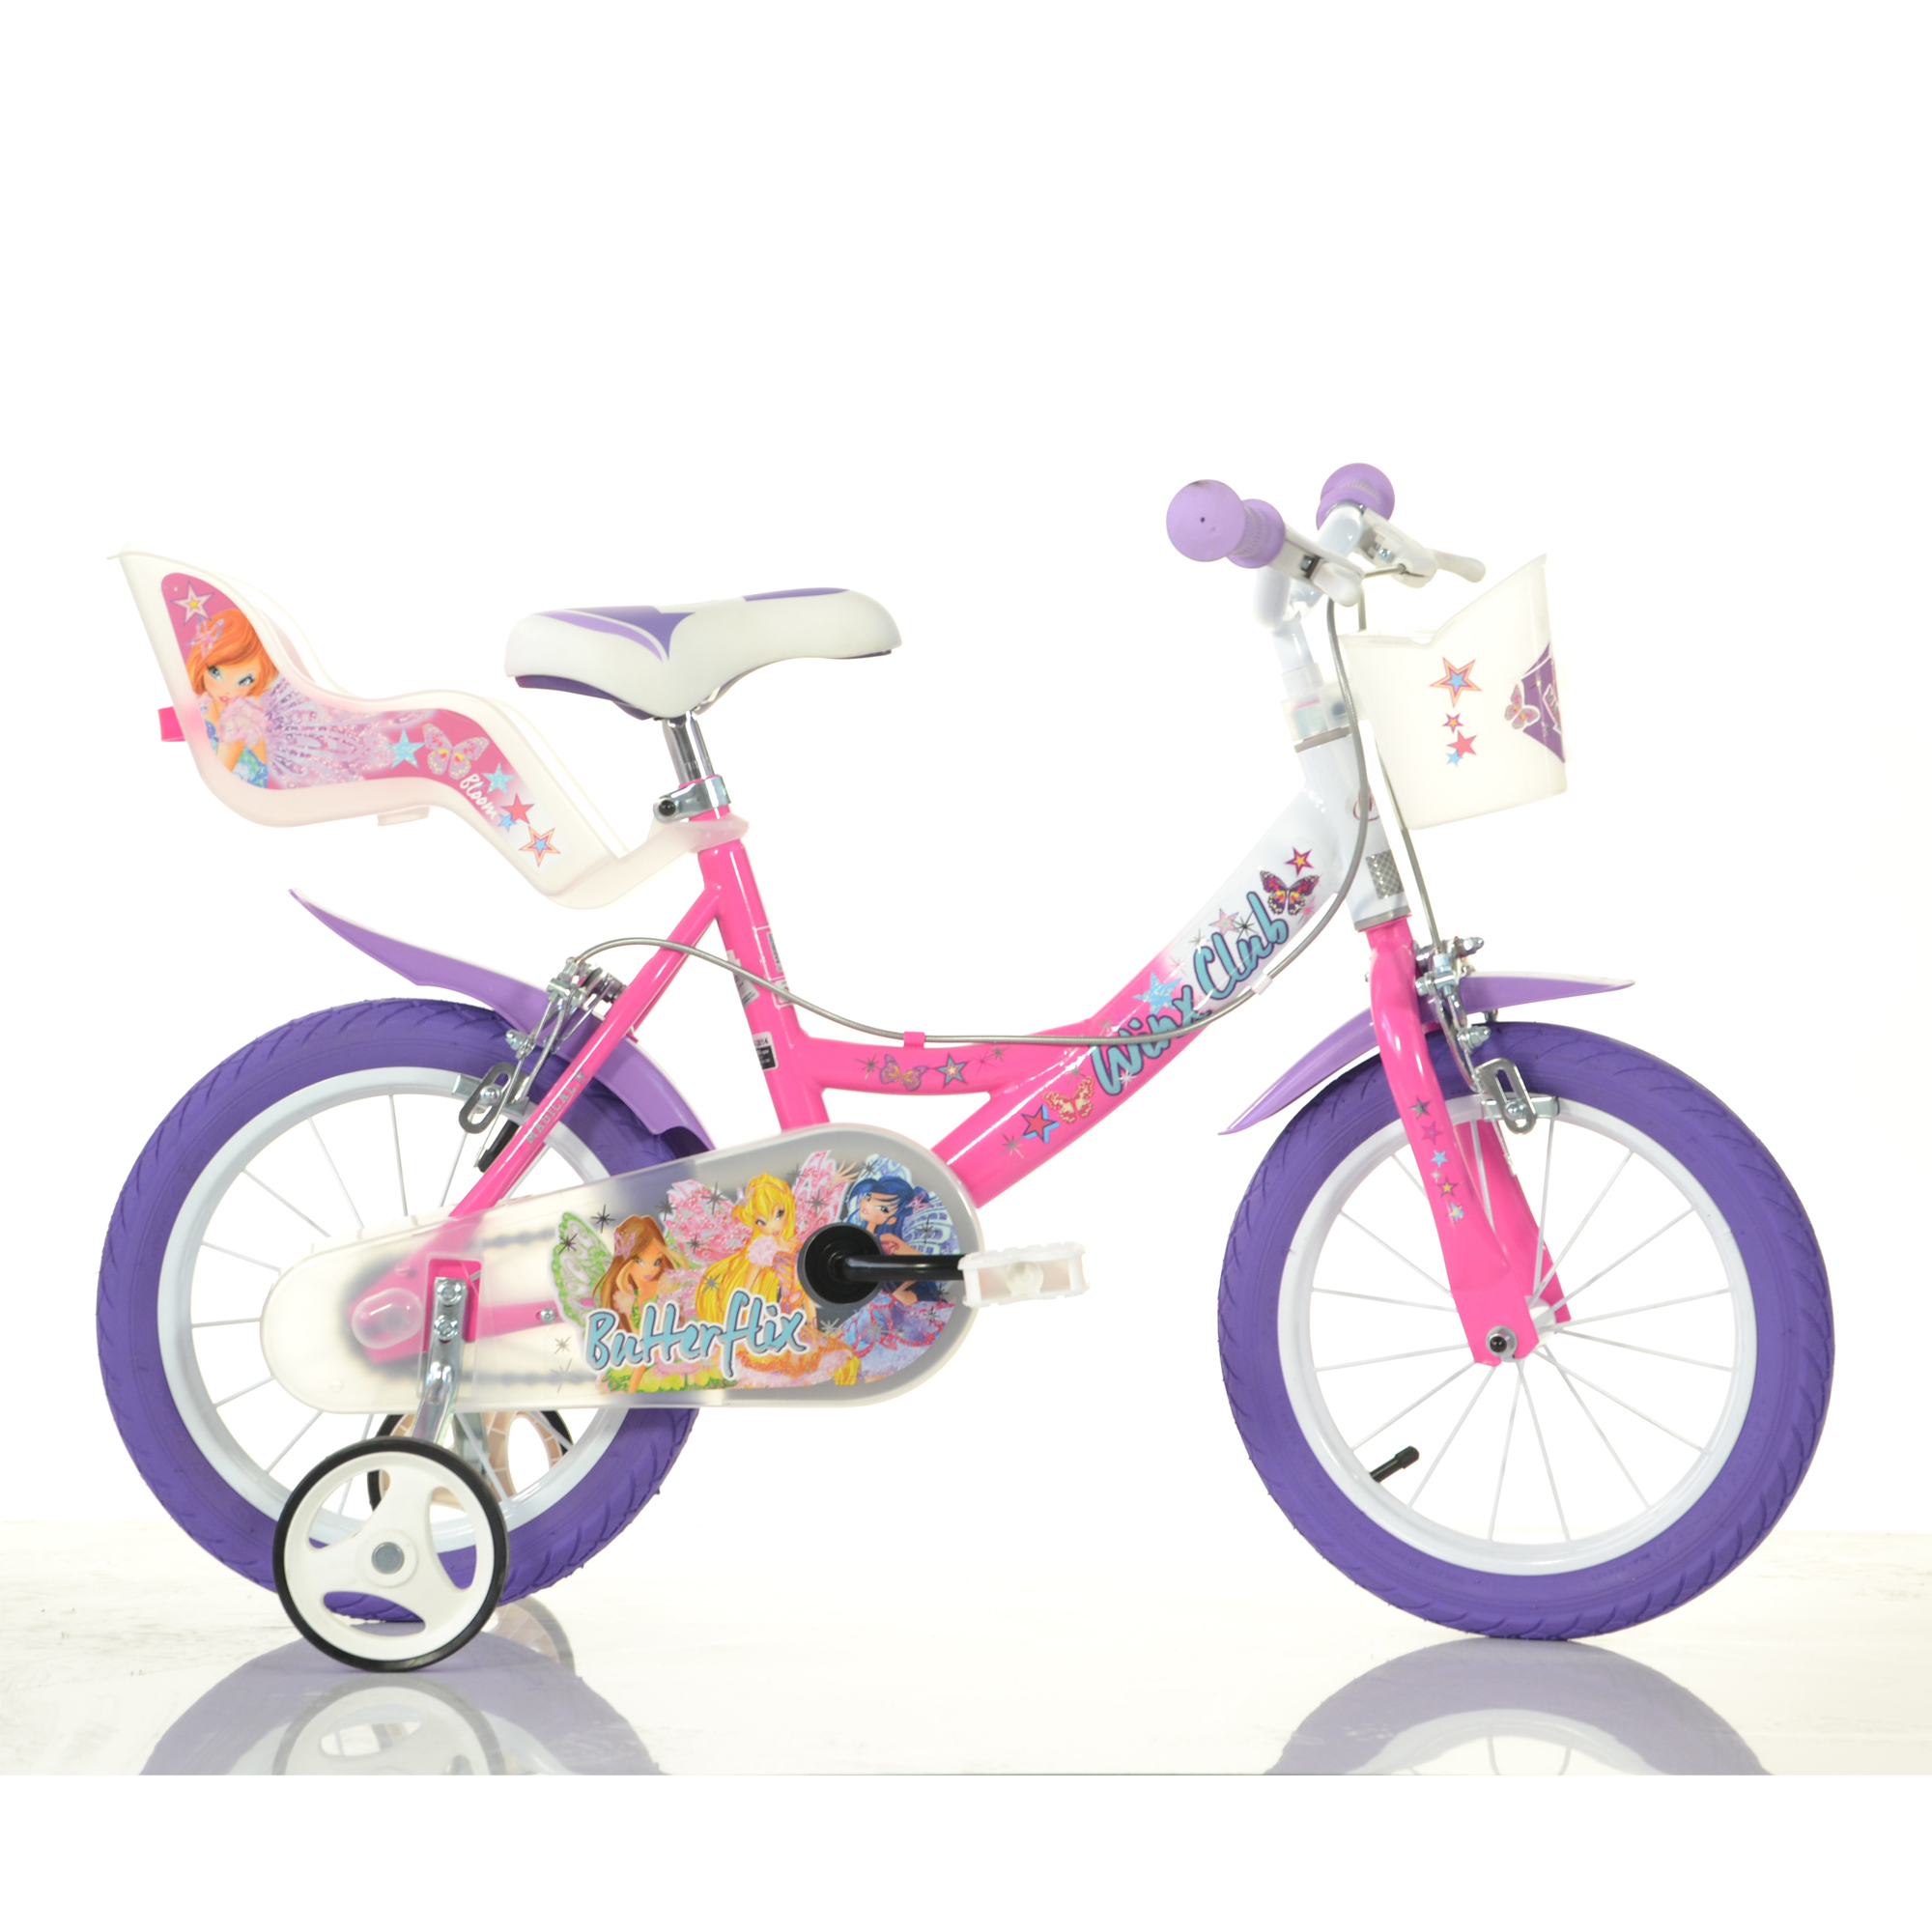 Bicicletta winx 16'' con portabambola, freno e cestino anteriore - adatta per bambini di 6-8 anni - WINX